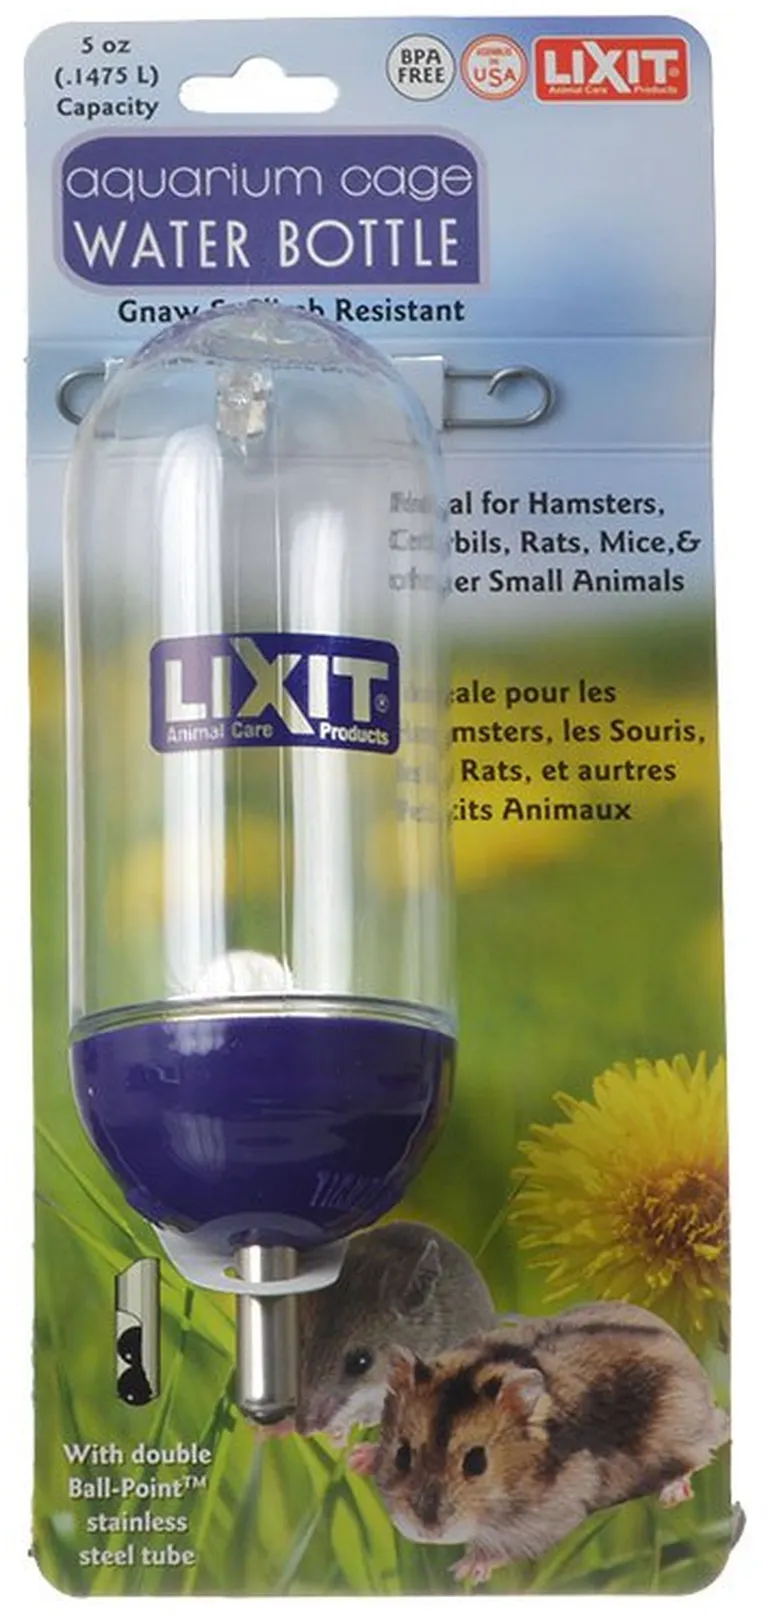 Lixit Aquarium Cage Water Bottle Photo 2